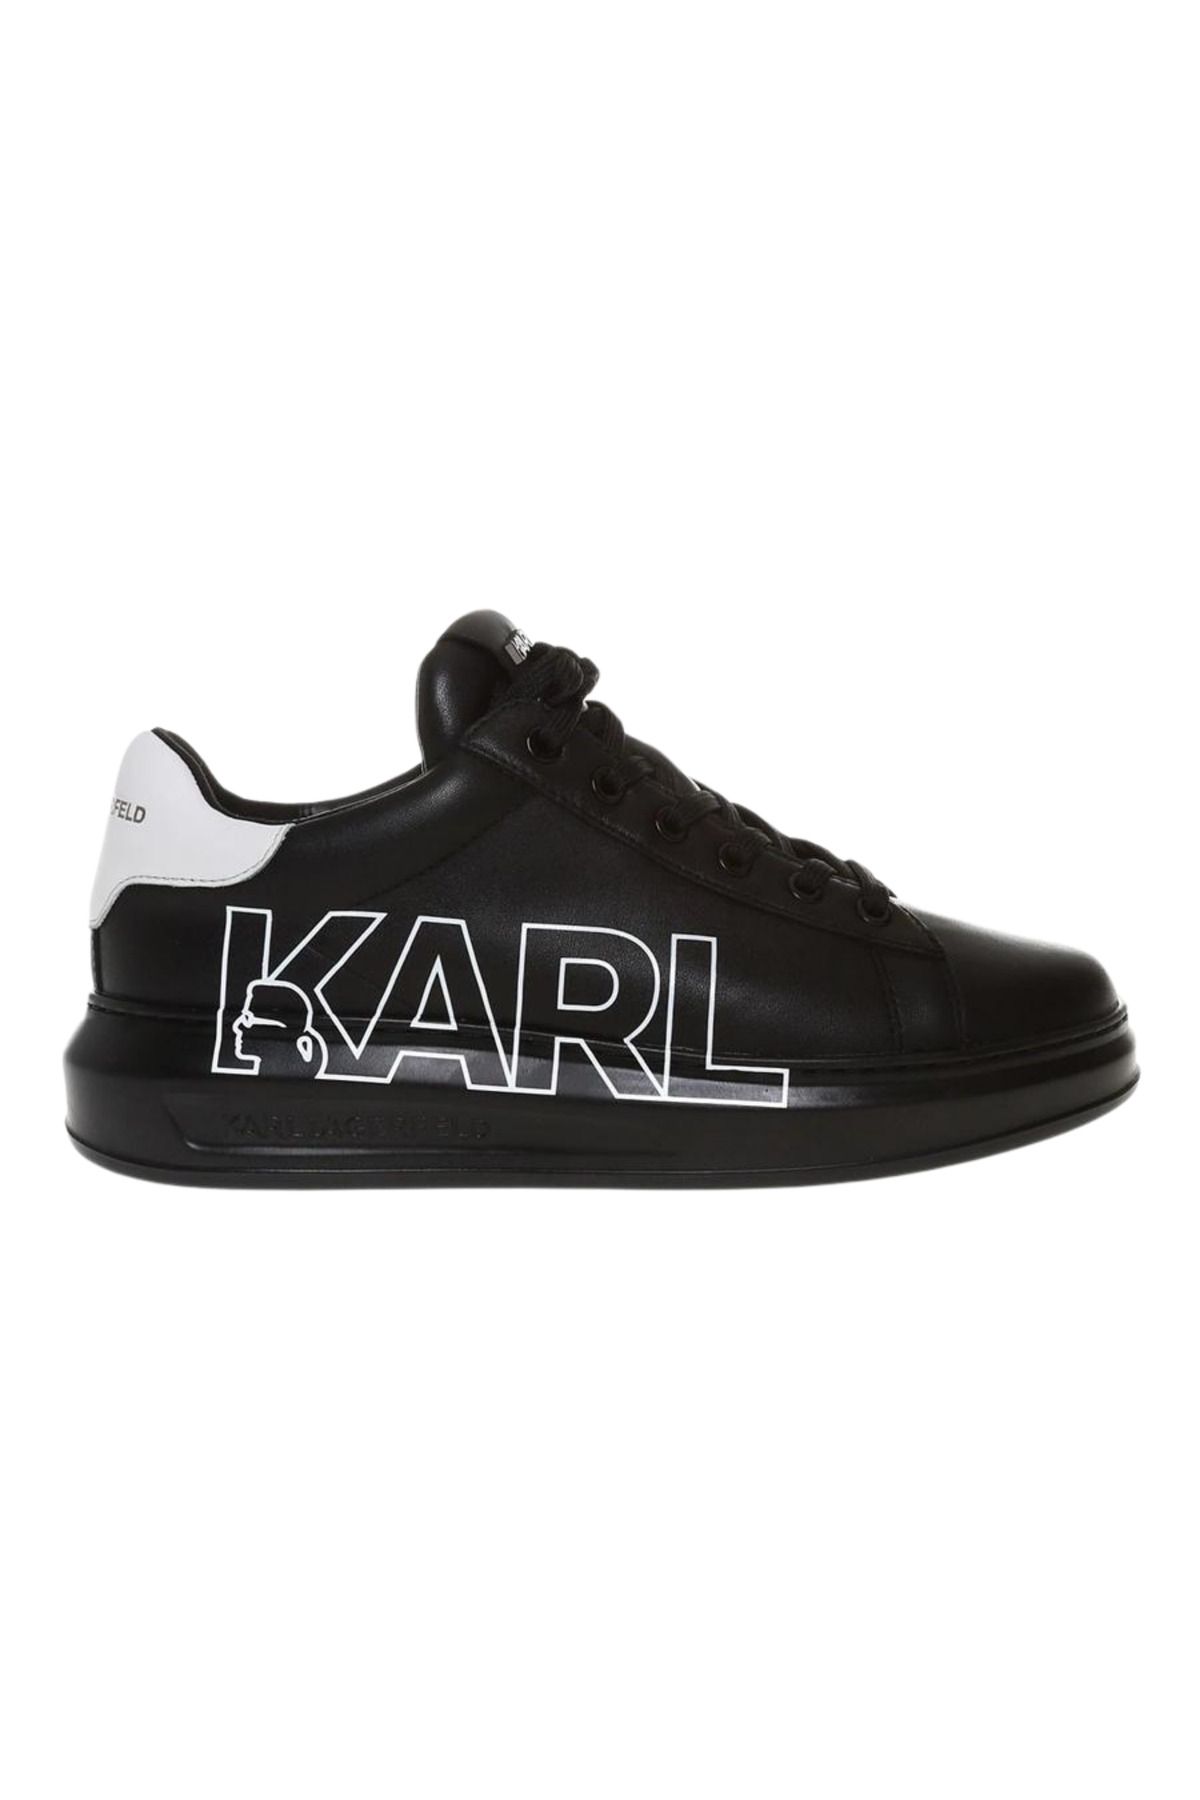 Karl LagerfeId Karl Lagerfeld Erkek Günlük Ayakkabı Kl52523 00x